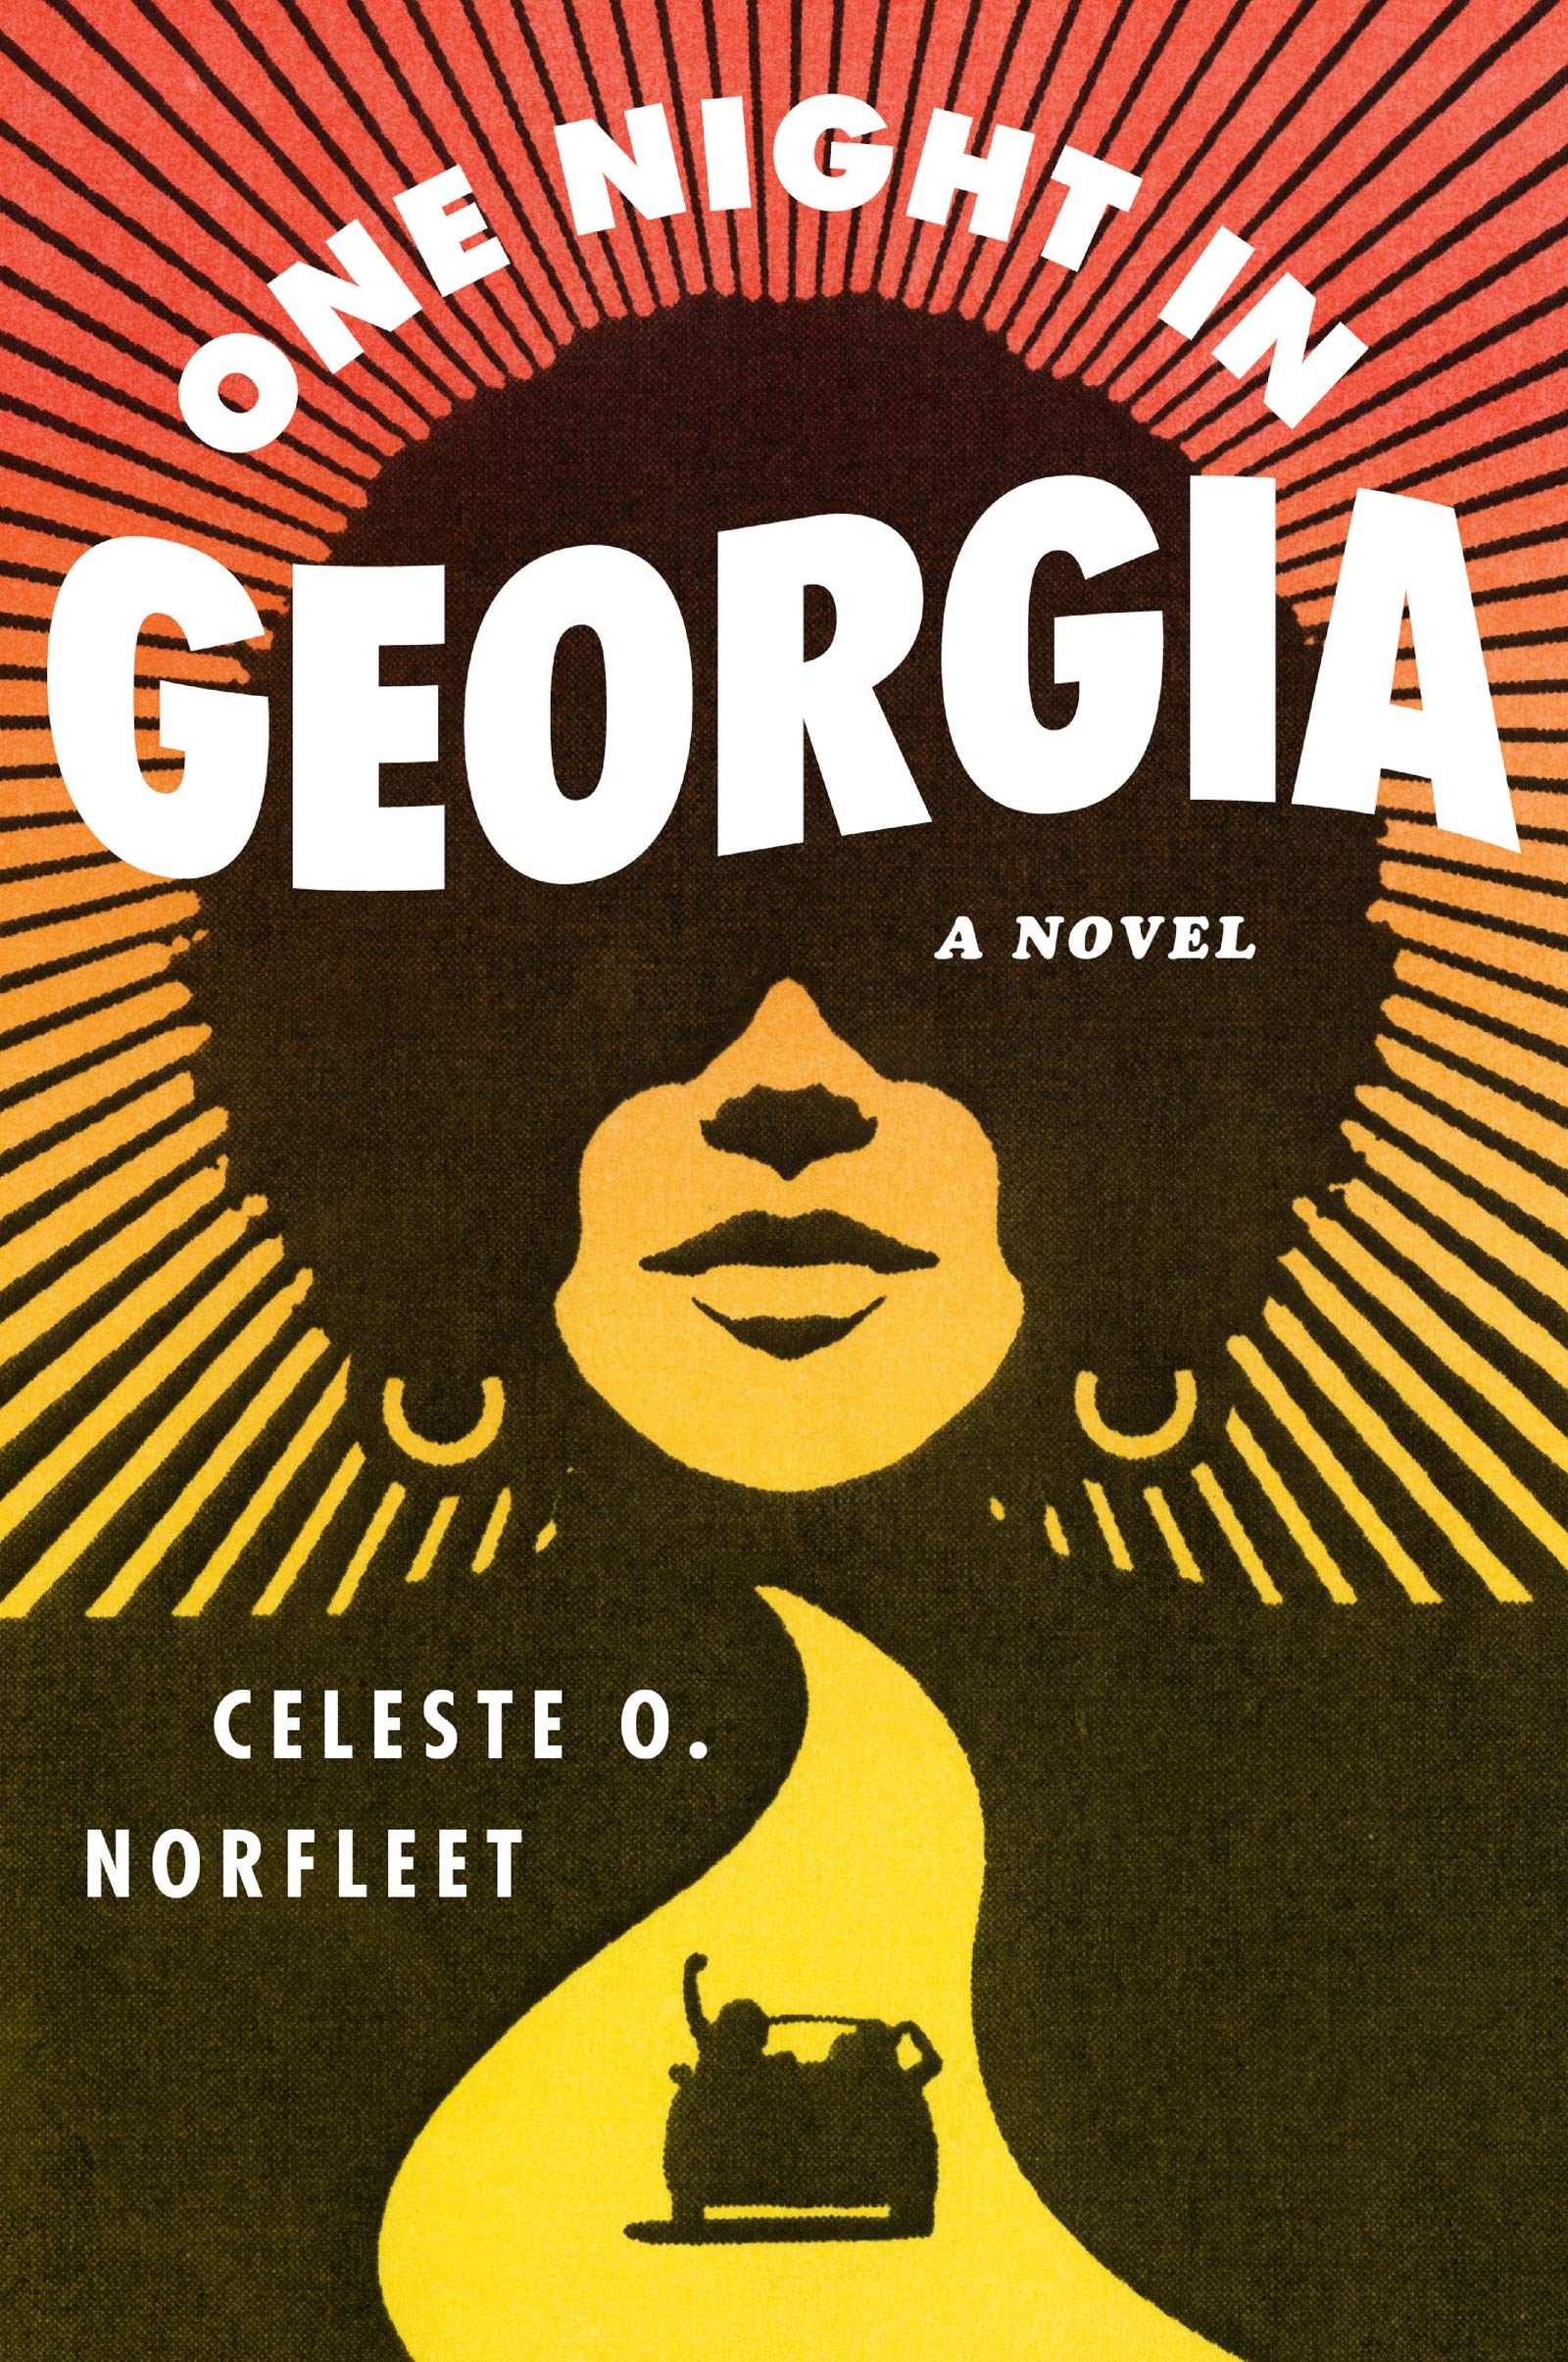 One Night in Georgia: A Novel